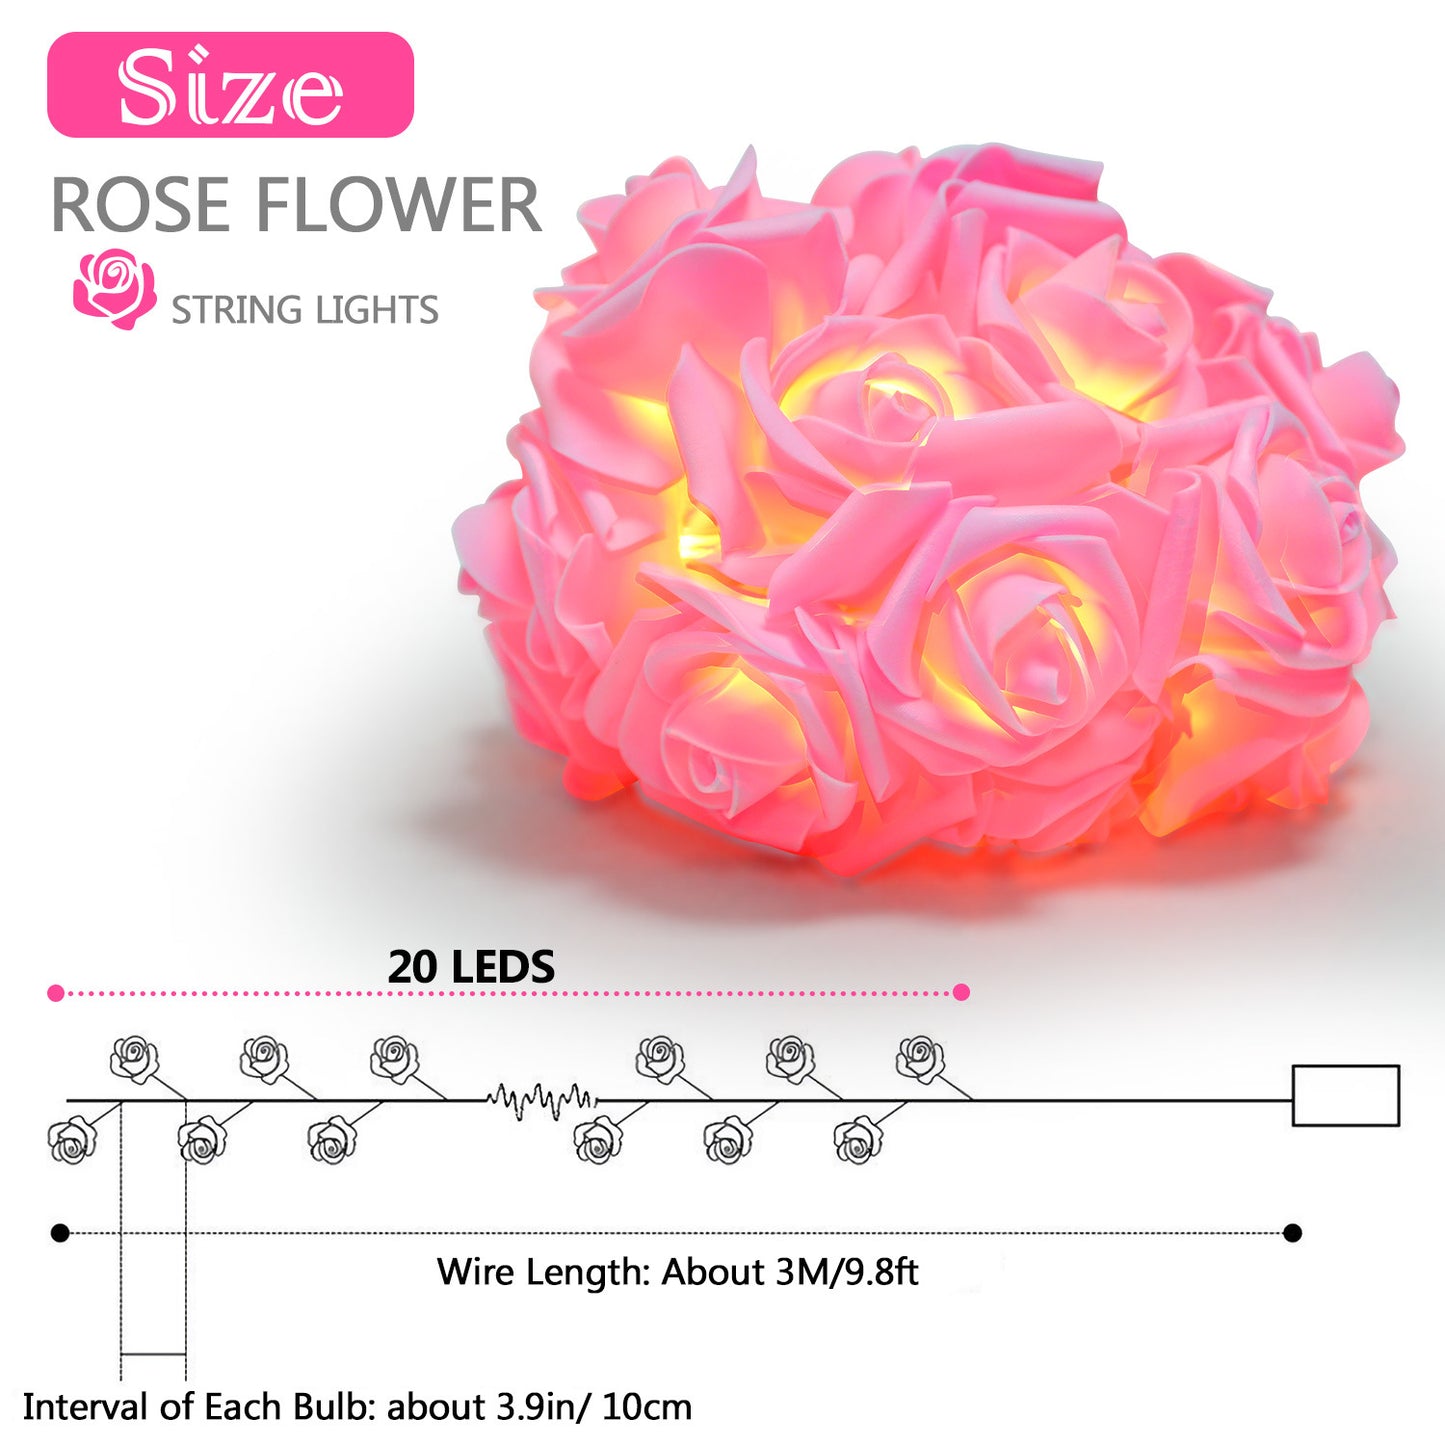 40 LED Rose Flower String Lights (10ft)